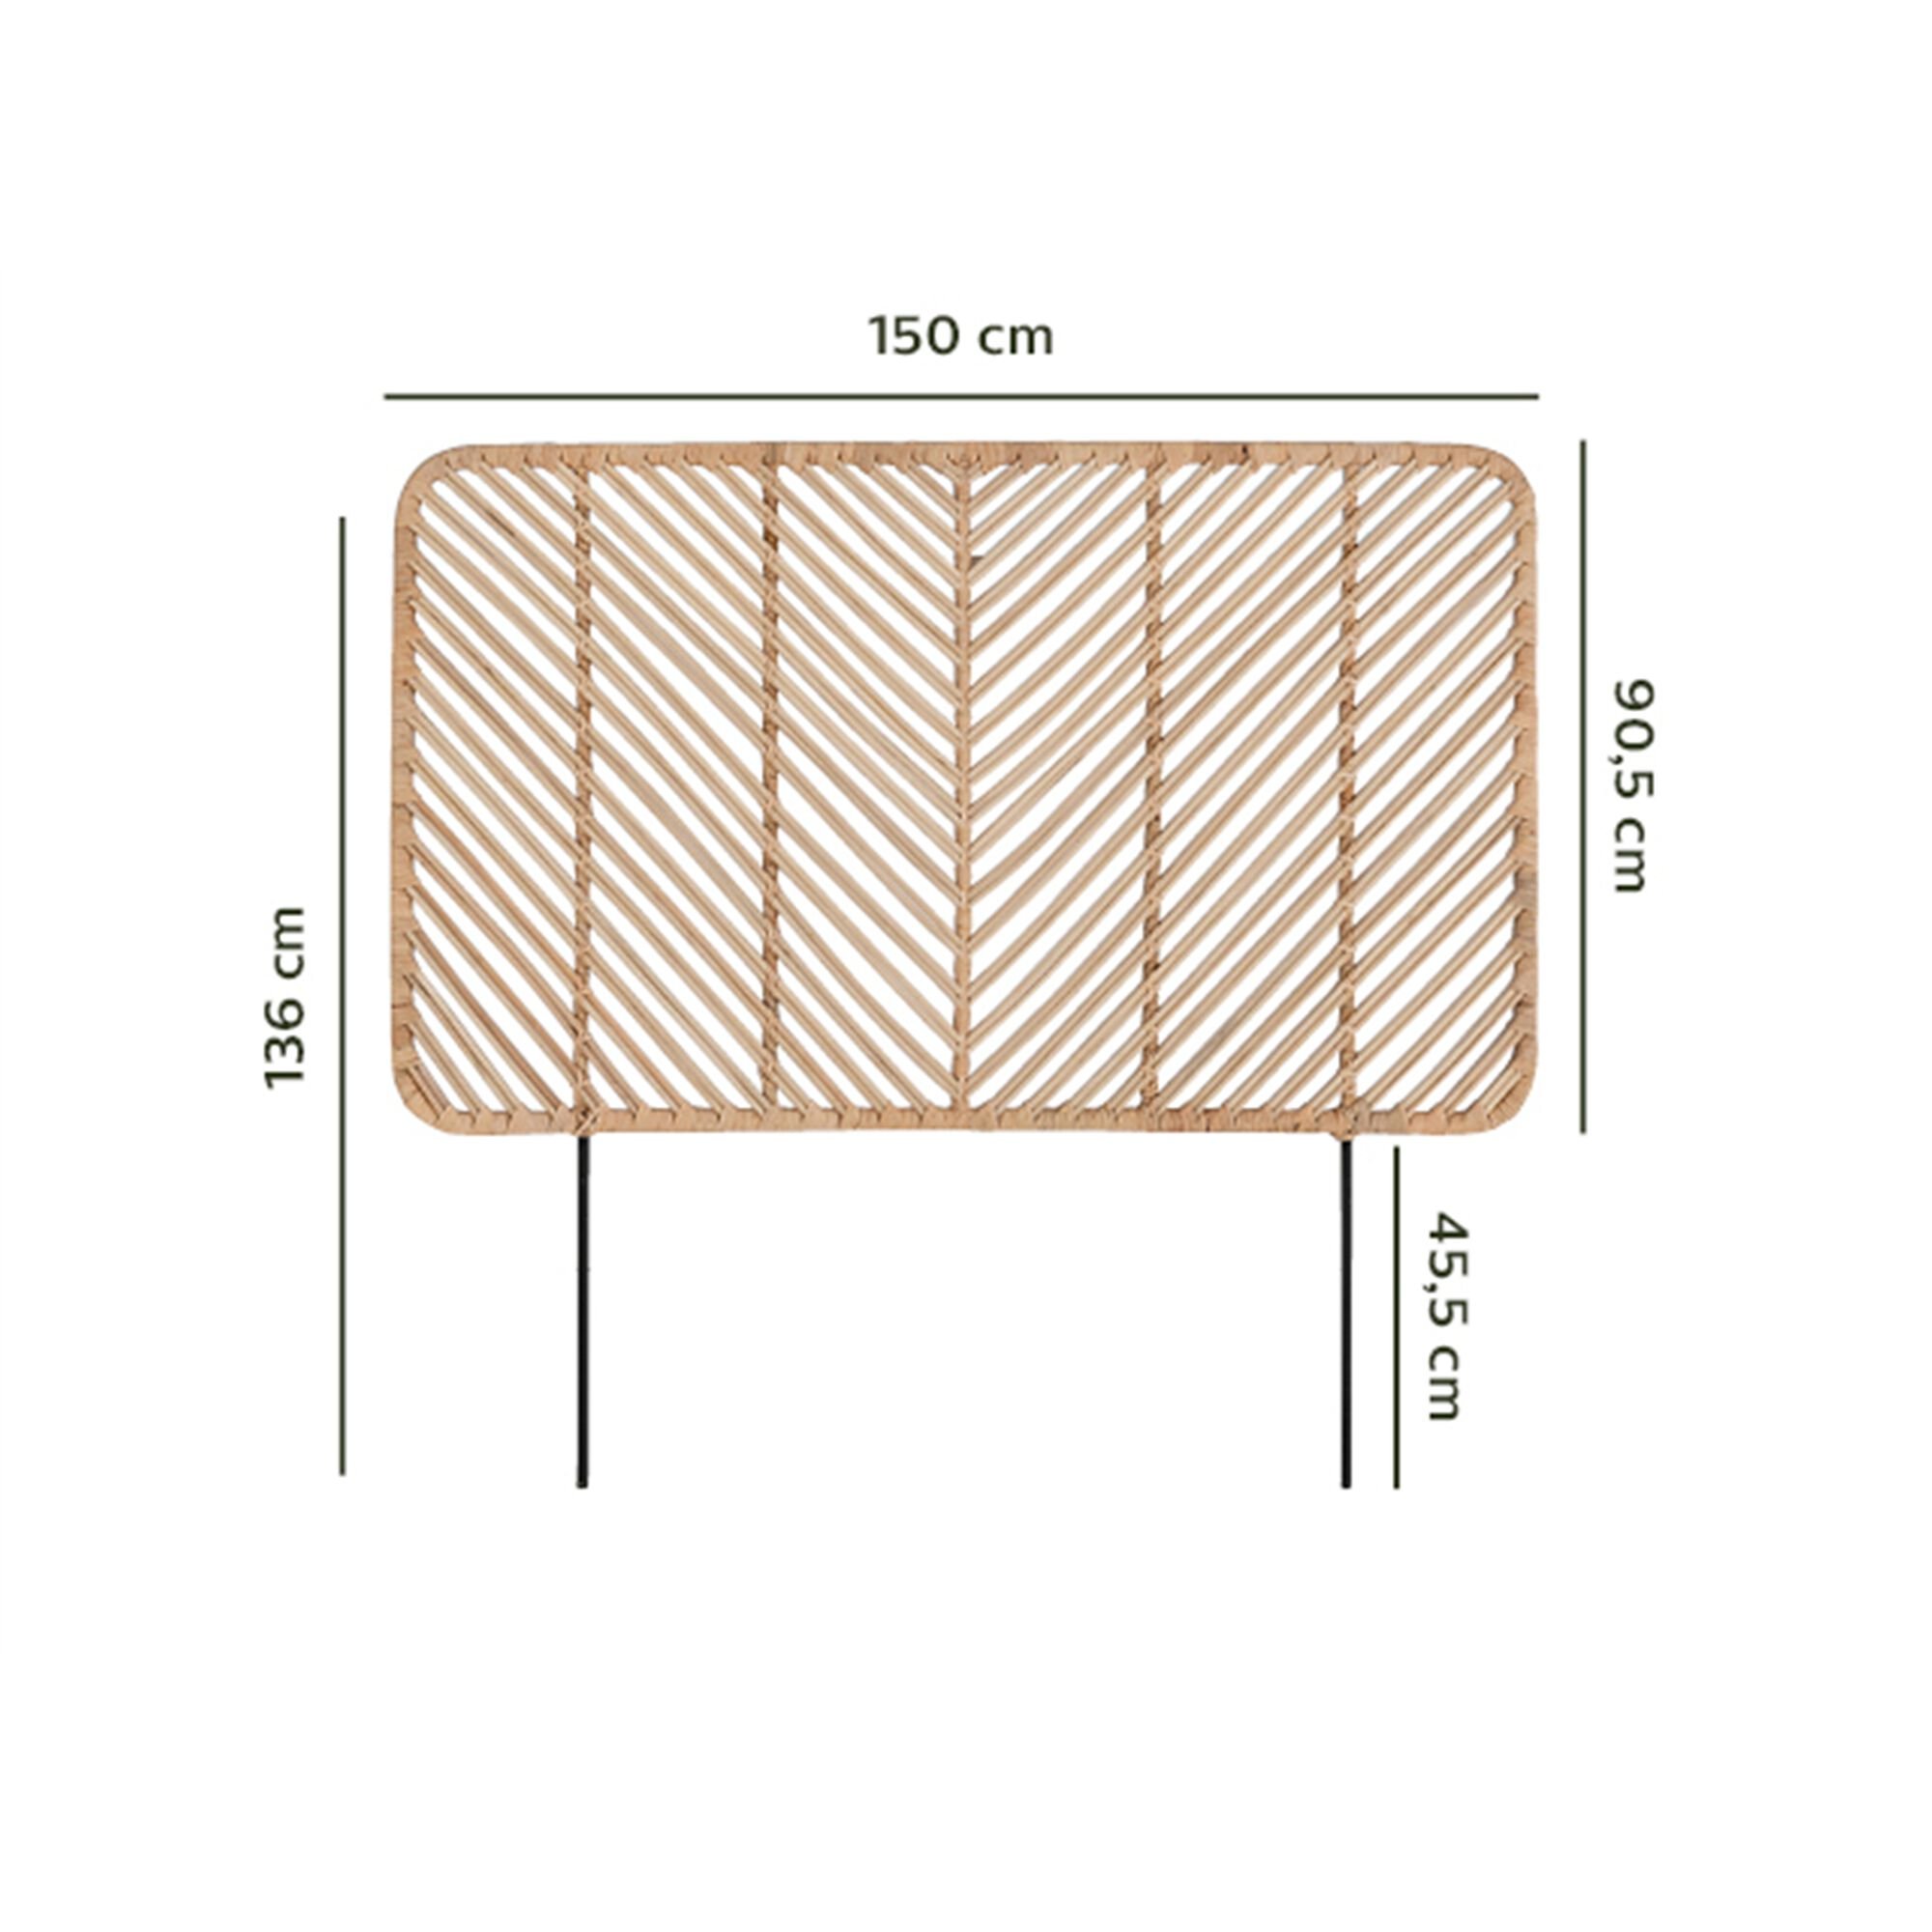 Tête de lit en rotin - L150cm-ARTEMIS